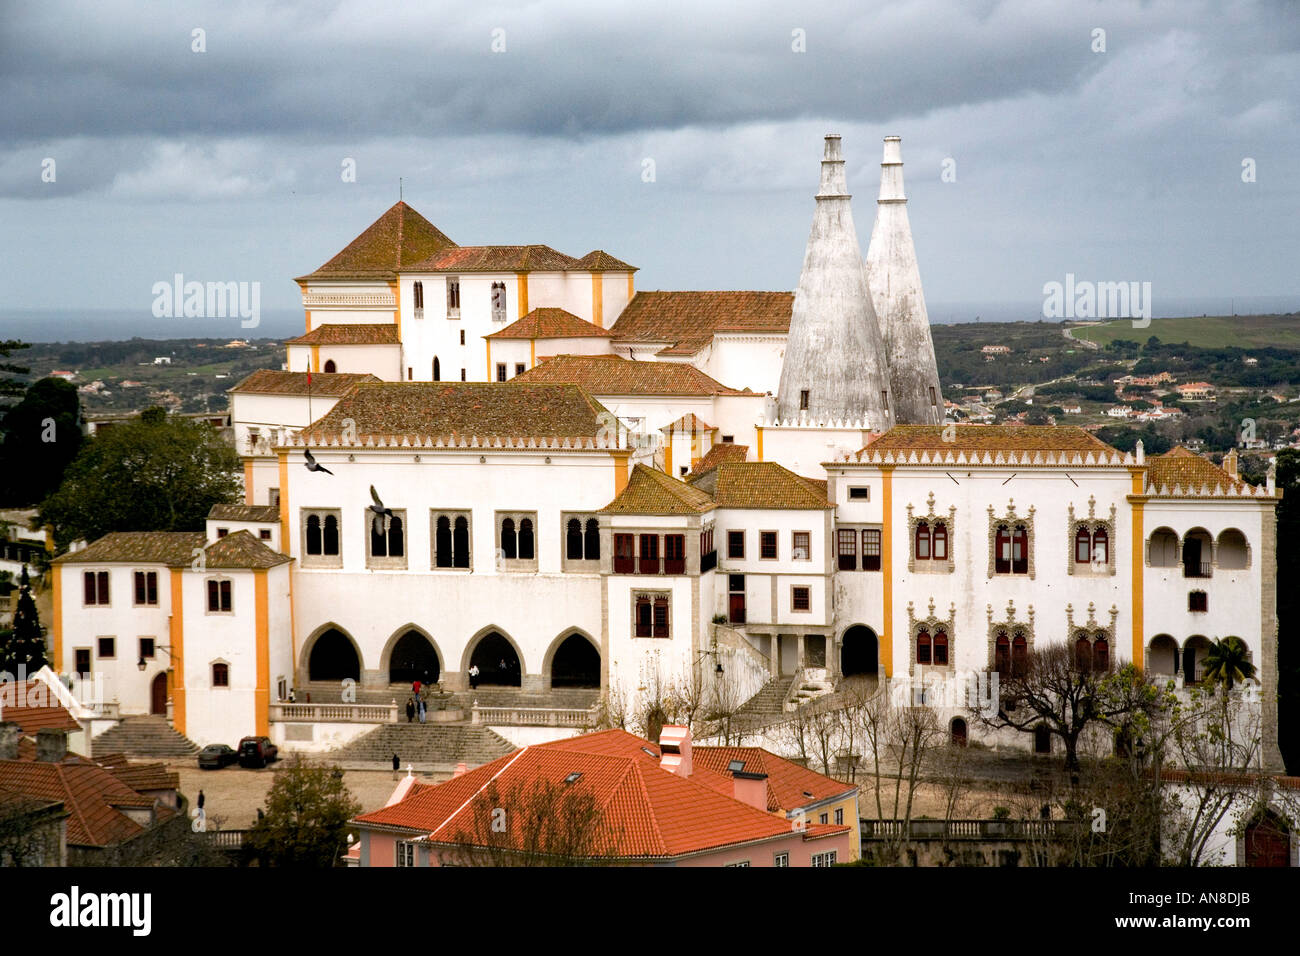 SINTRA PORTOGALLO Palacio Nacional de Sintra a palazzo reale fino al 1910 il Sintra National Palace è stato da ultimo abitato dalla regina Mari Foto Stock